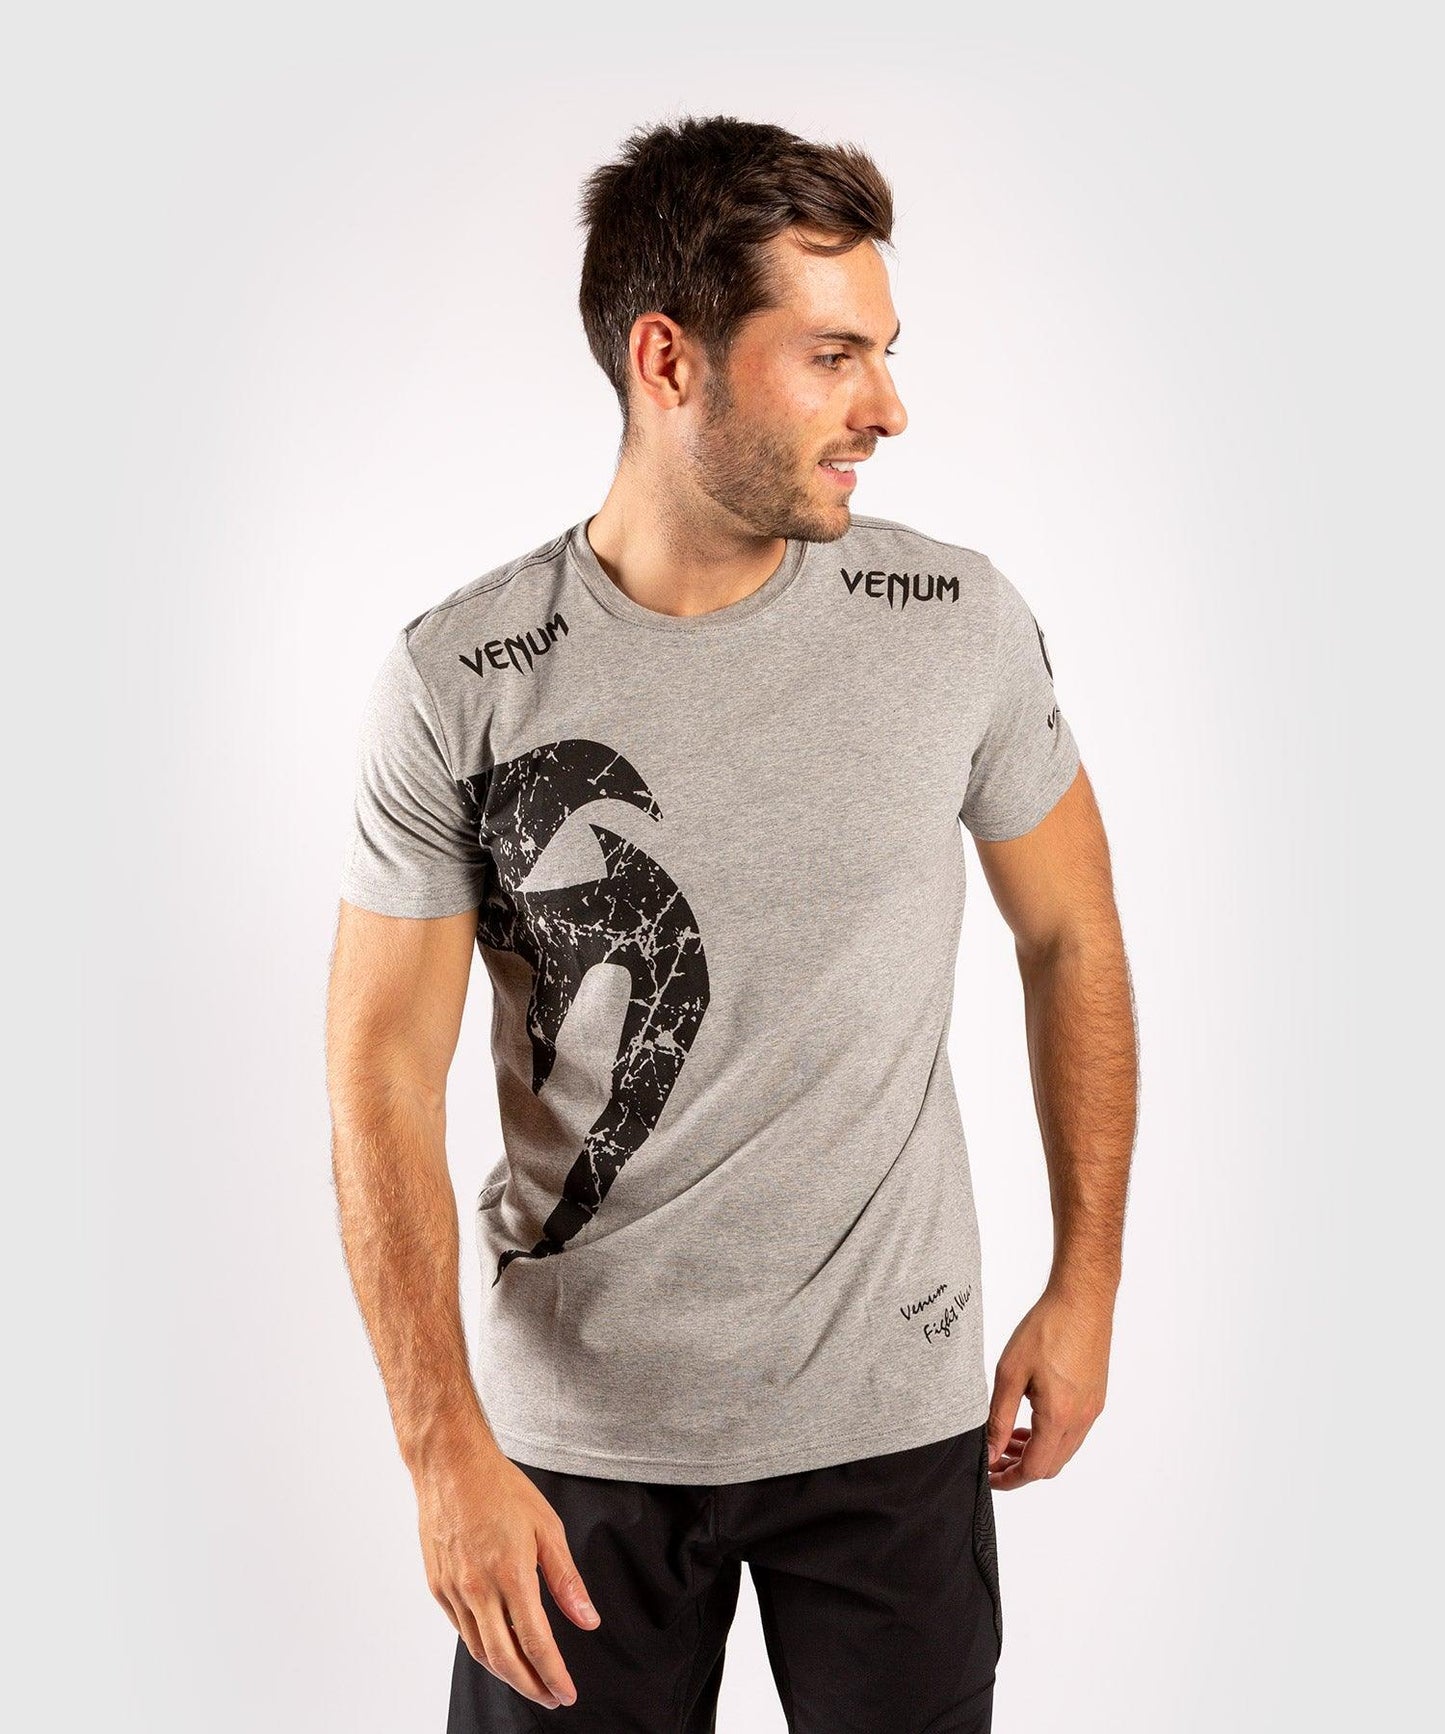 Venum Giant T-shirt - Grey/Black Picture 1